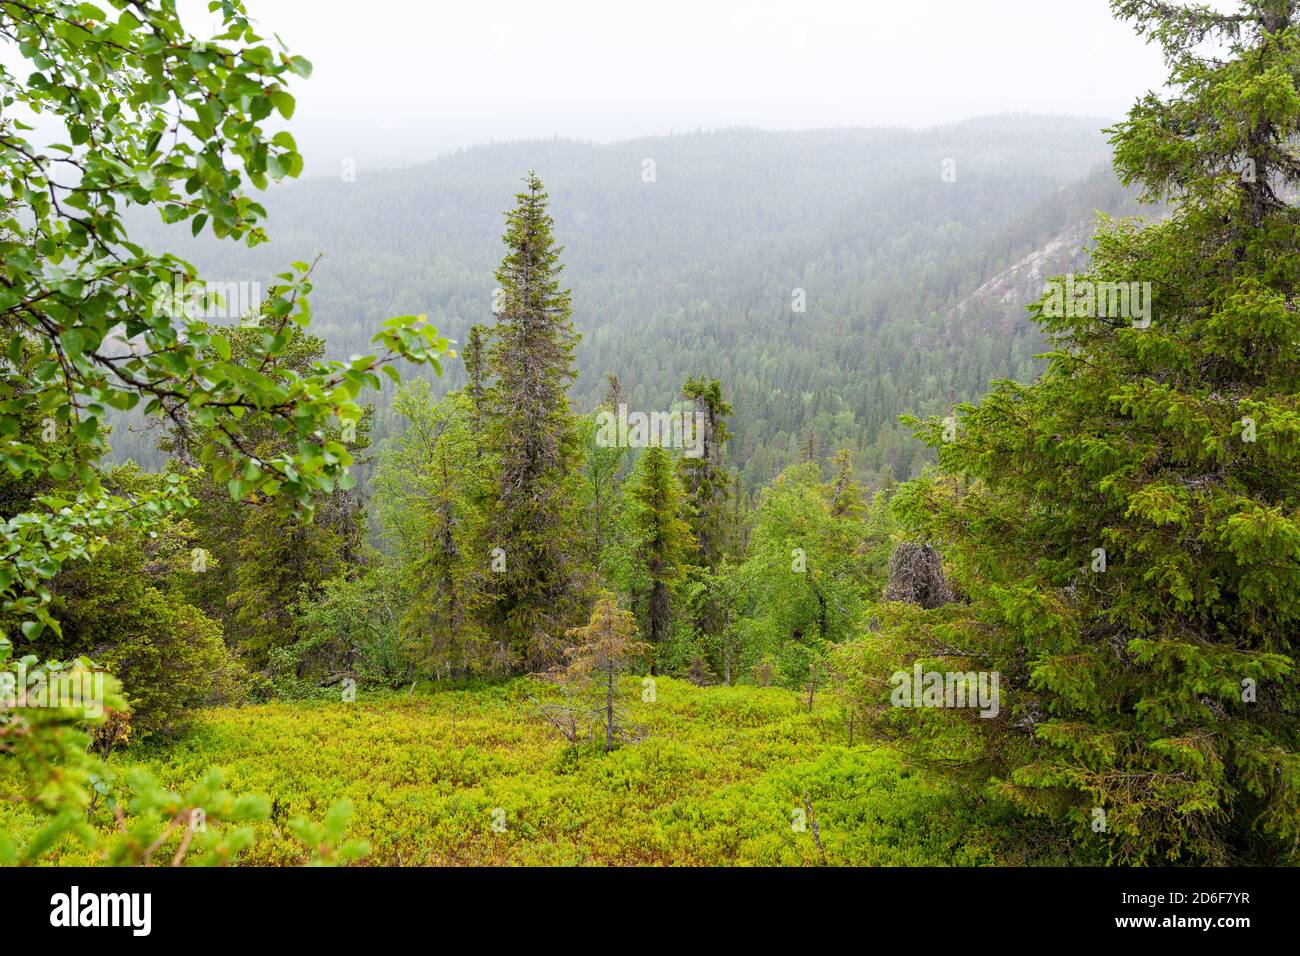 Una hermosa vista a una ladera forestal cubierta de árboles durante el verano en el norte de Finlandia. Foto de stock